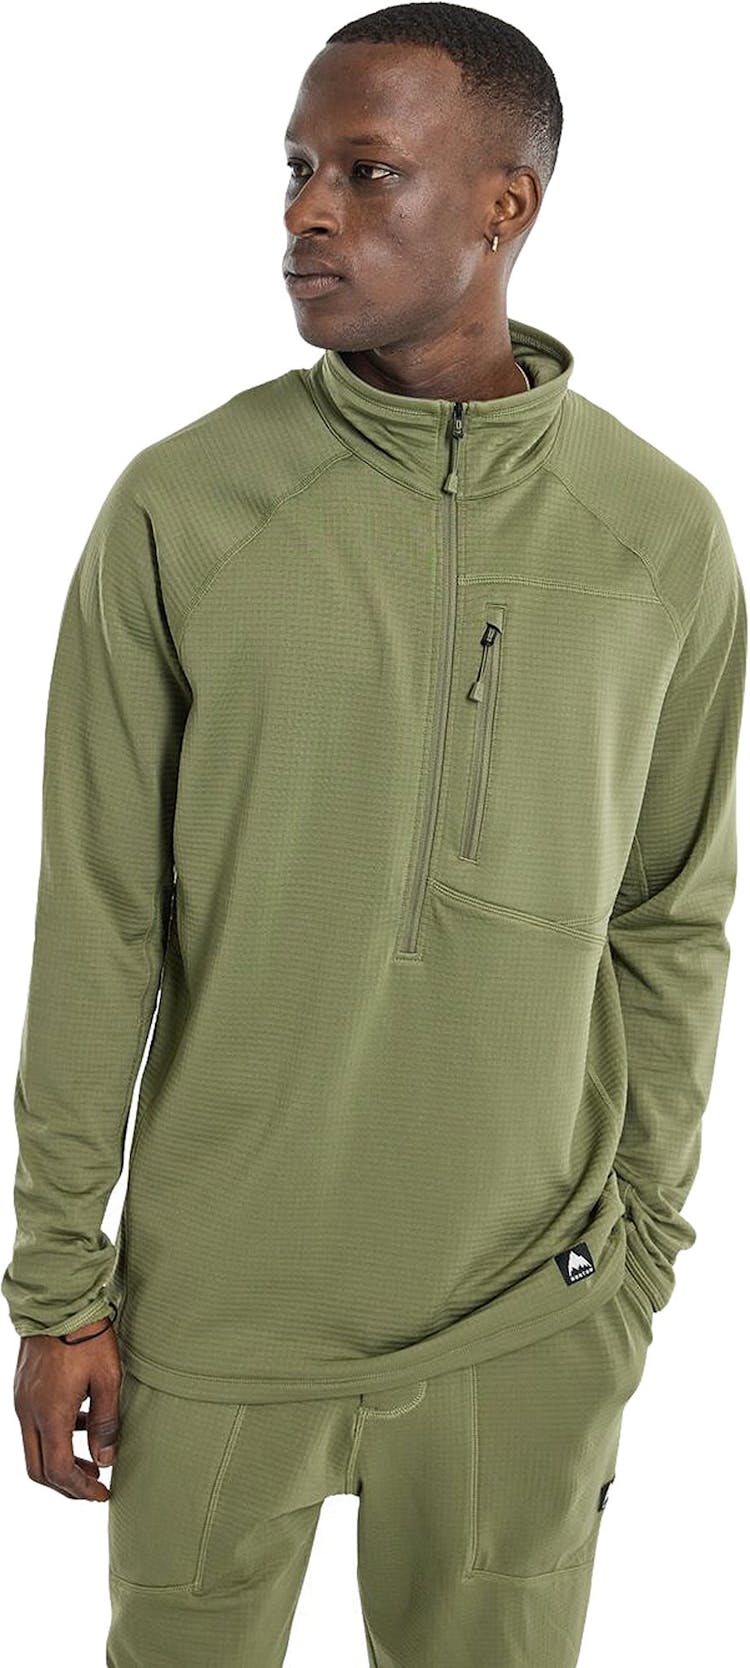 Product gallery image number 5 for product Stockrun Grid Half-Zip Fleece Sweatshirt - Men's